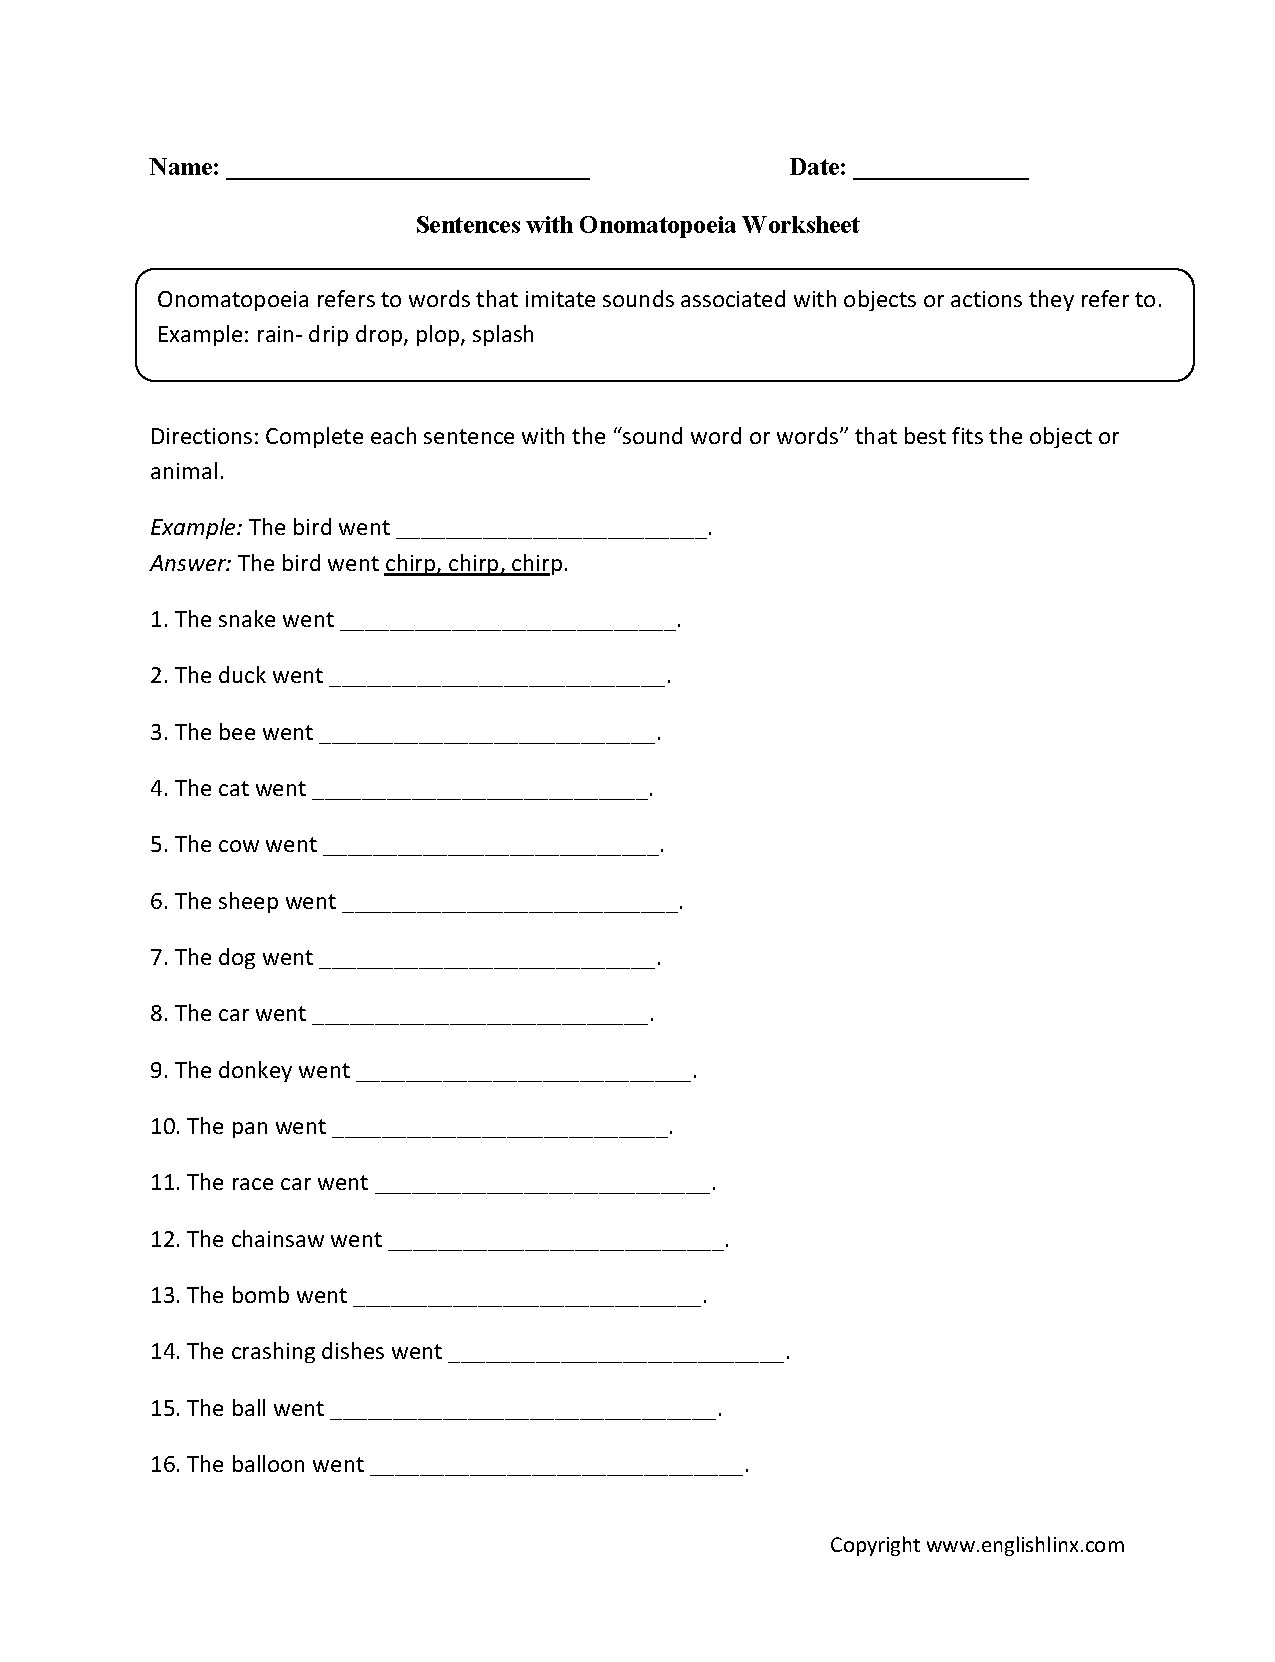 Sentences with Onomatopoeia Worksheet